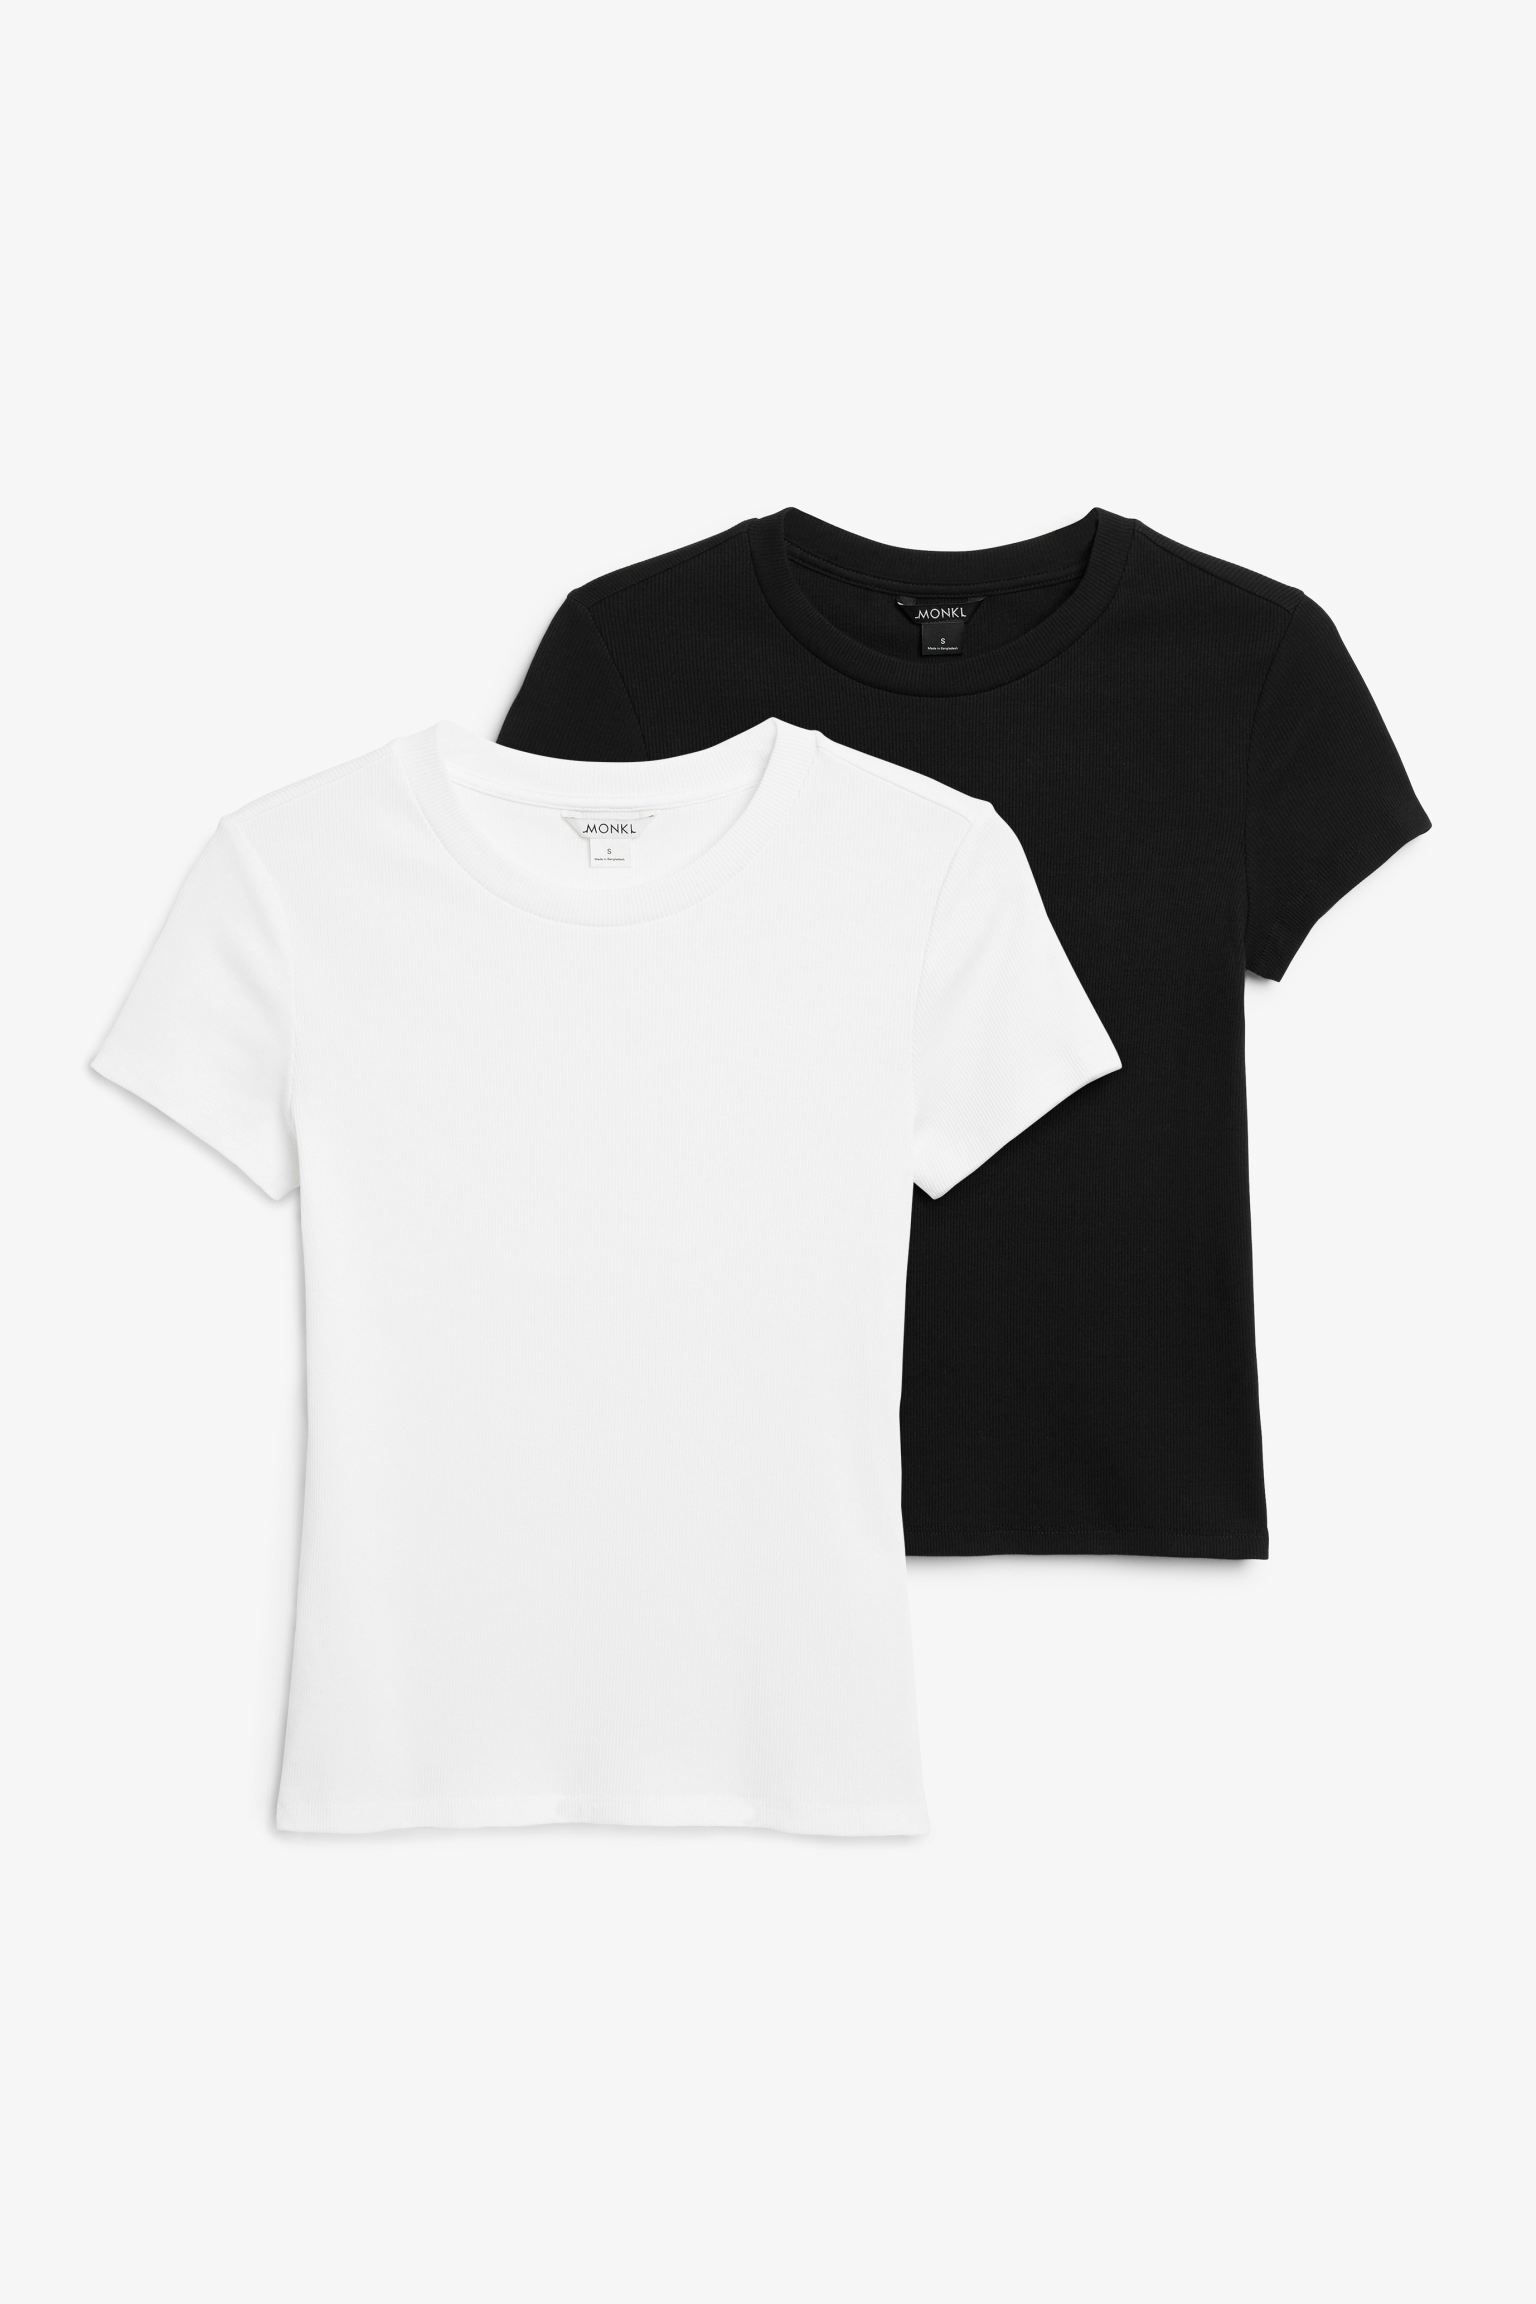 Комплект футболок женских Monki 1174161006 черных XL (доставка из-за рубежа)